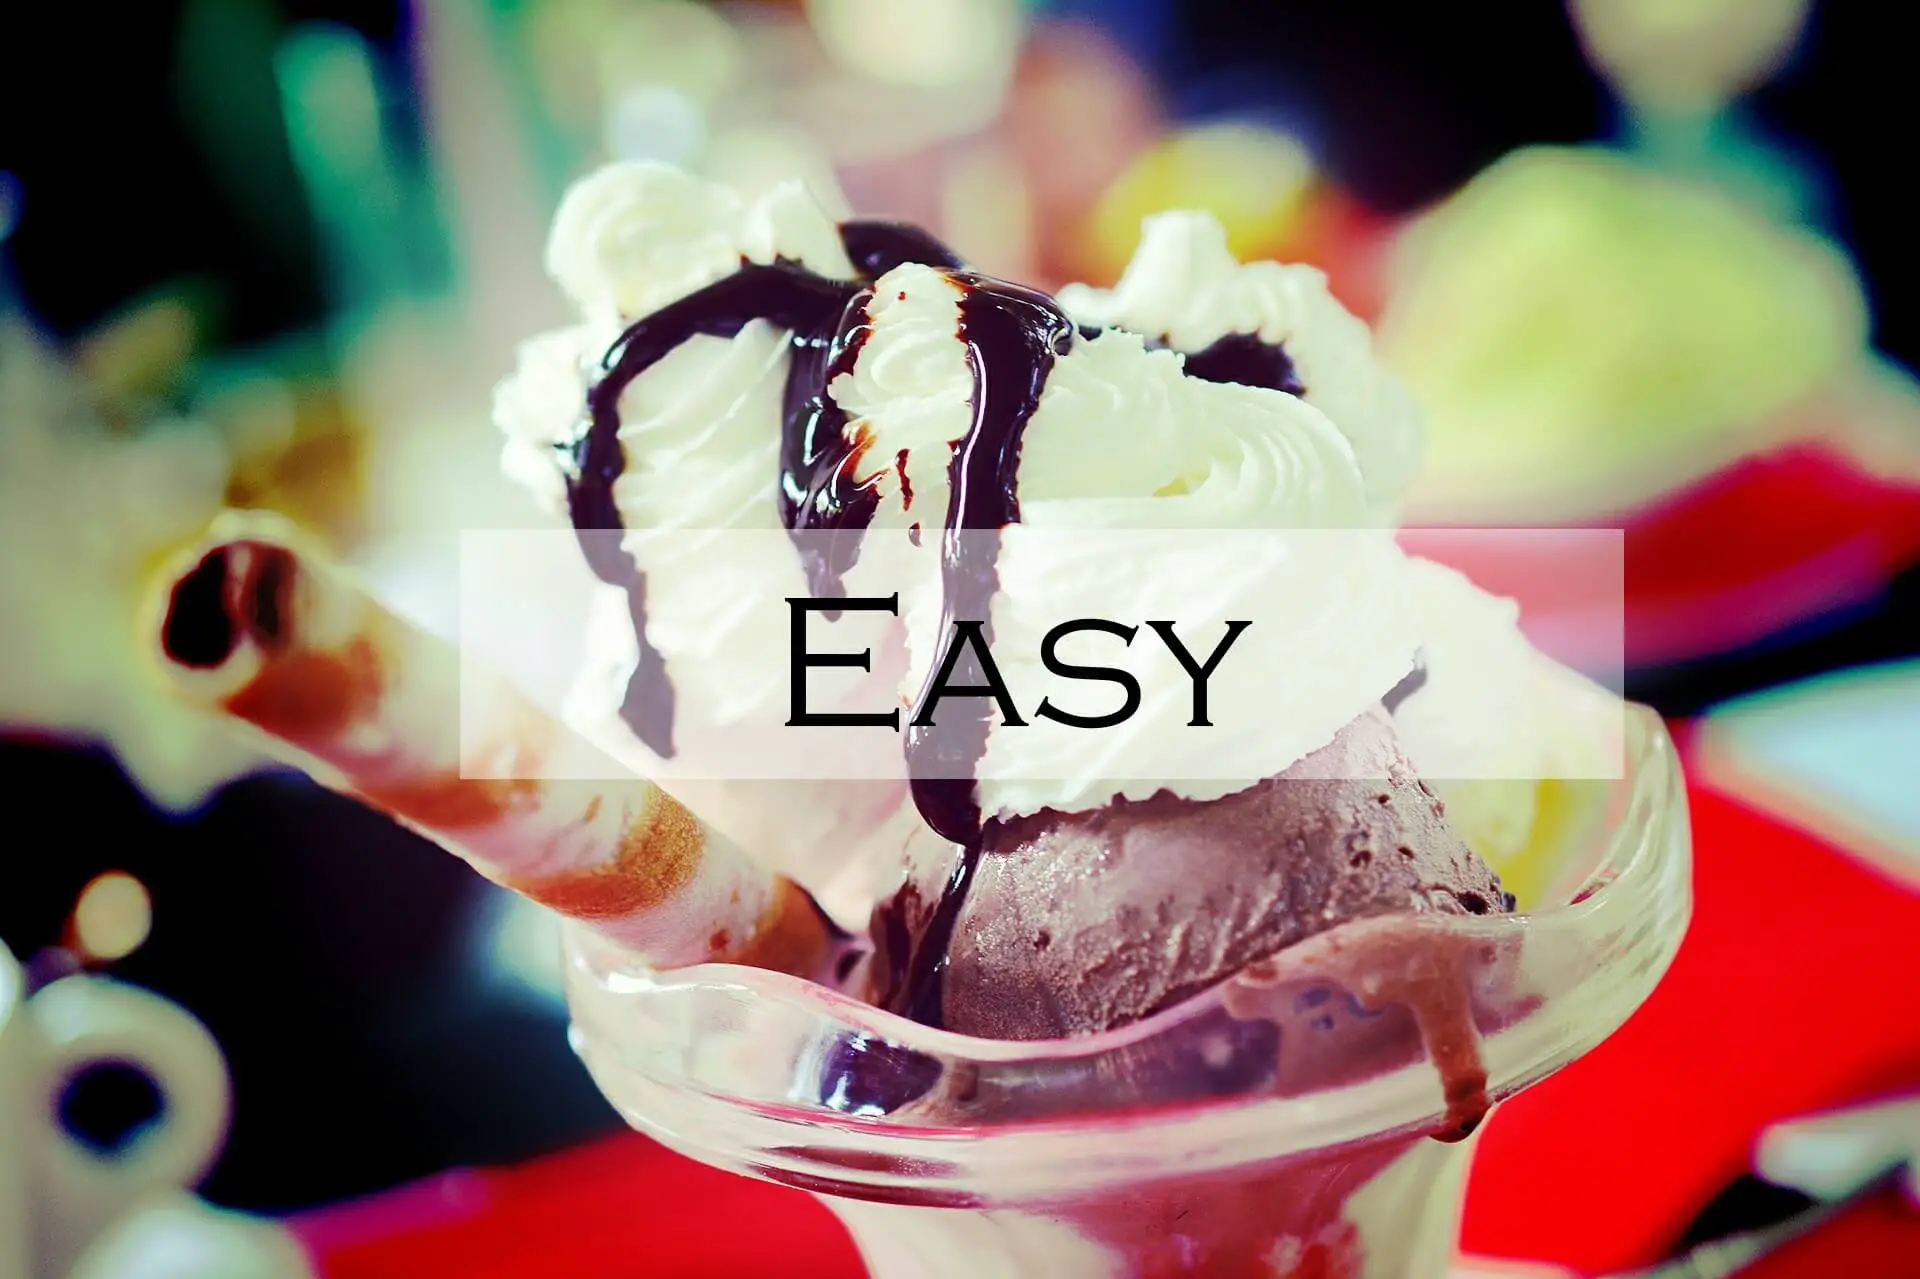 Easy Ice Cream Recipes